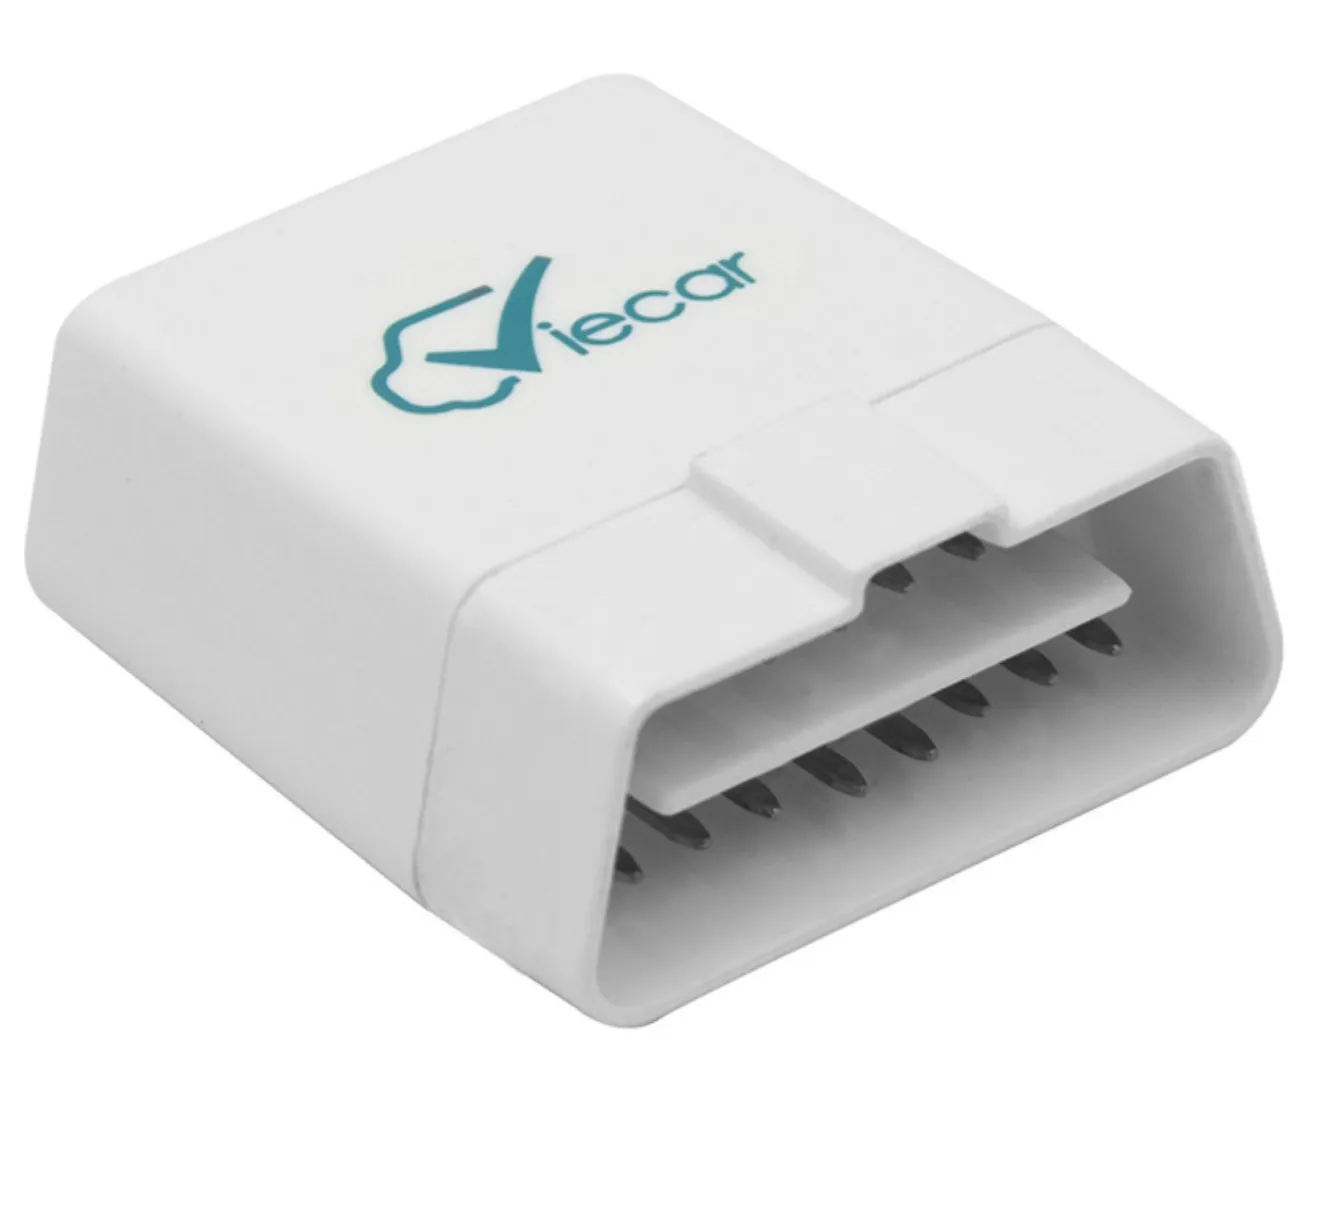 Original Bluetooth 4.0 OBD2 Carro Diagnóstico Leitor Scanner Viecar VC100 Automóvel Aprendizagem OBD Ferramenta de diagnóstico